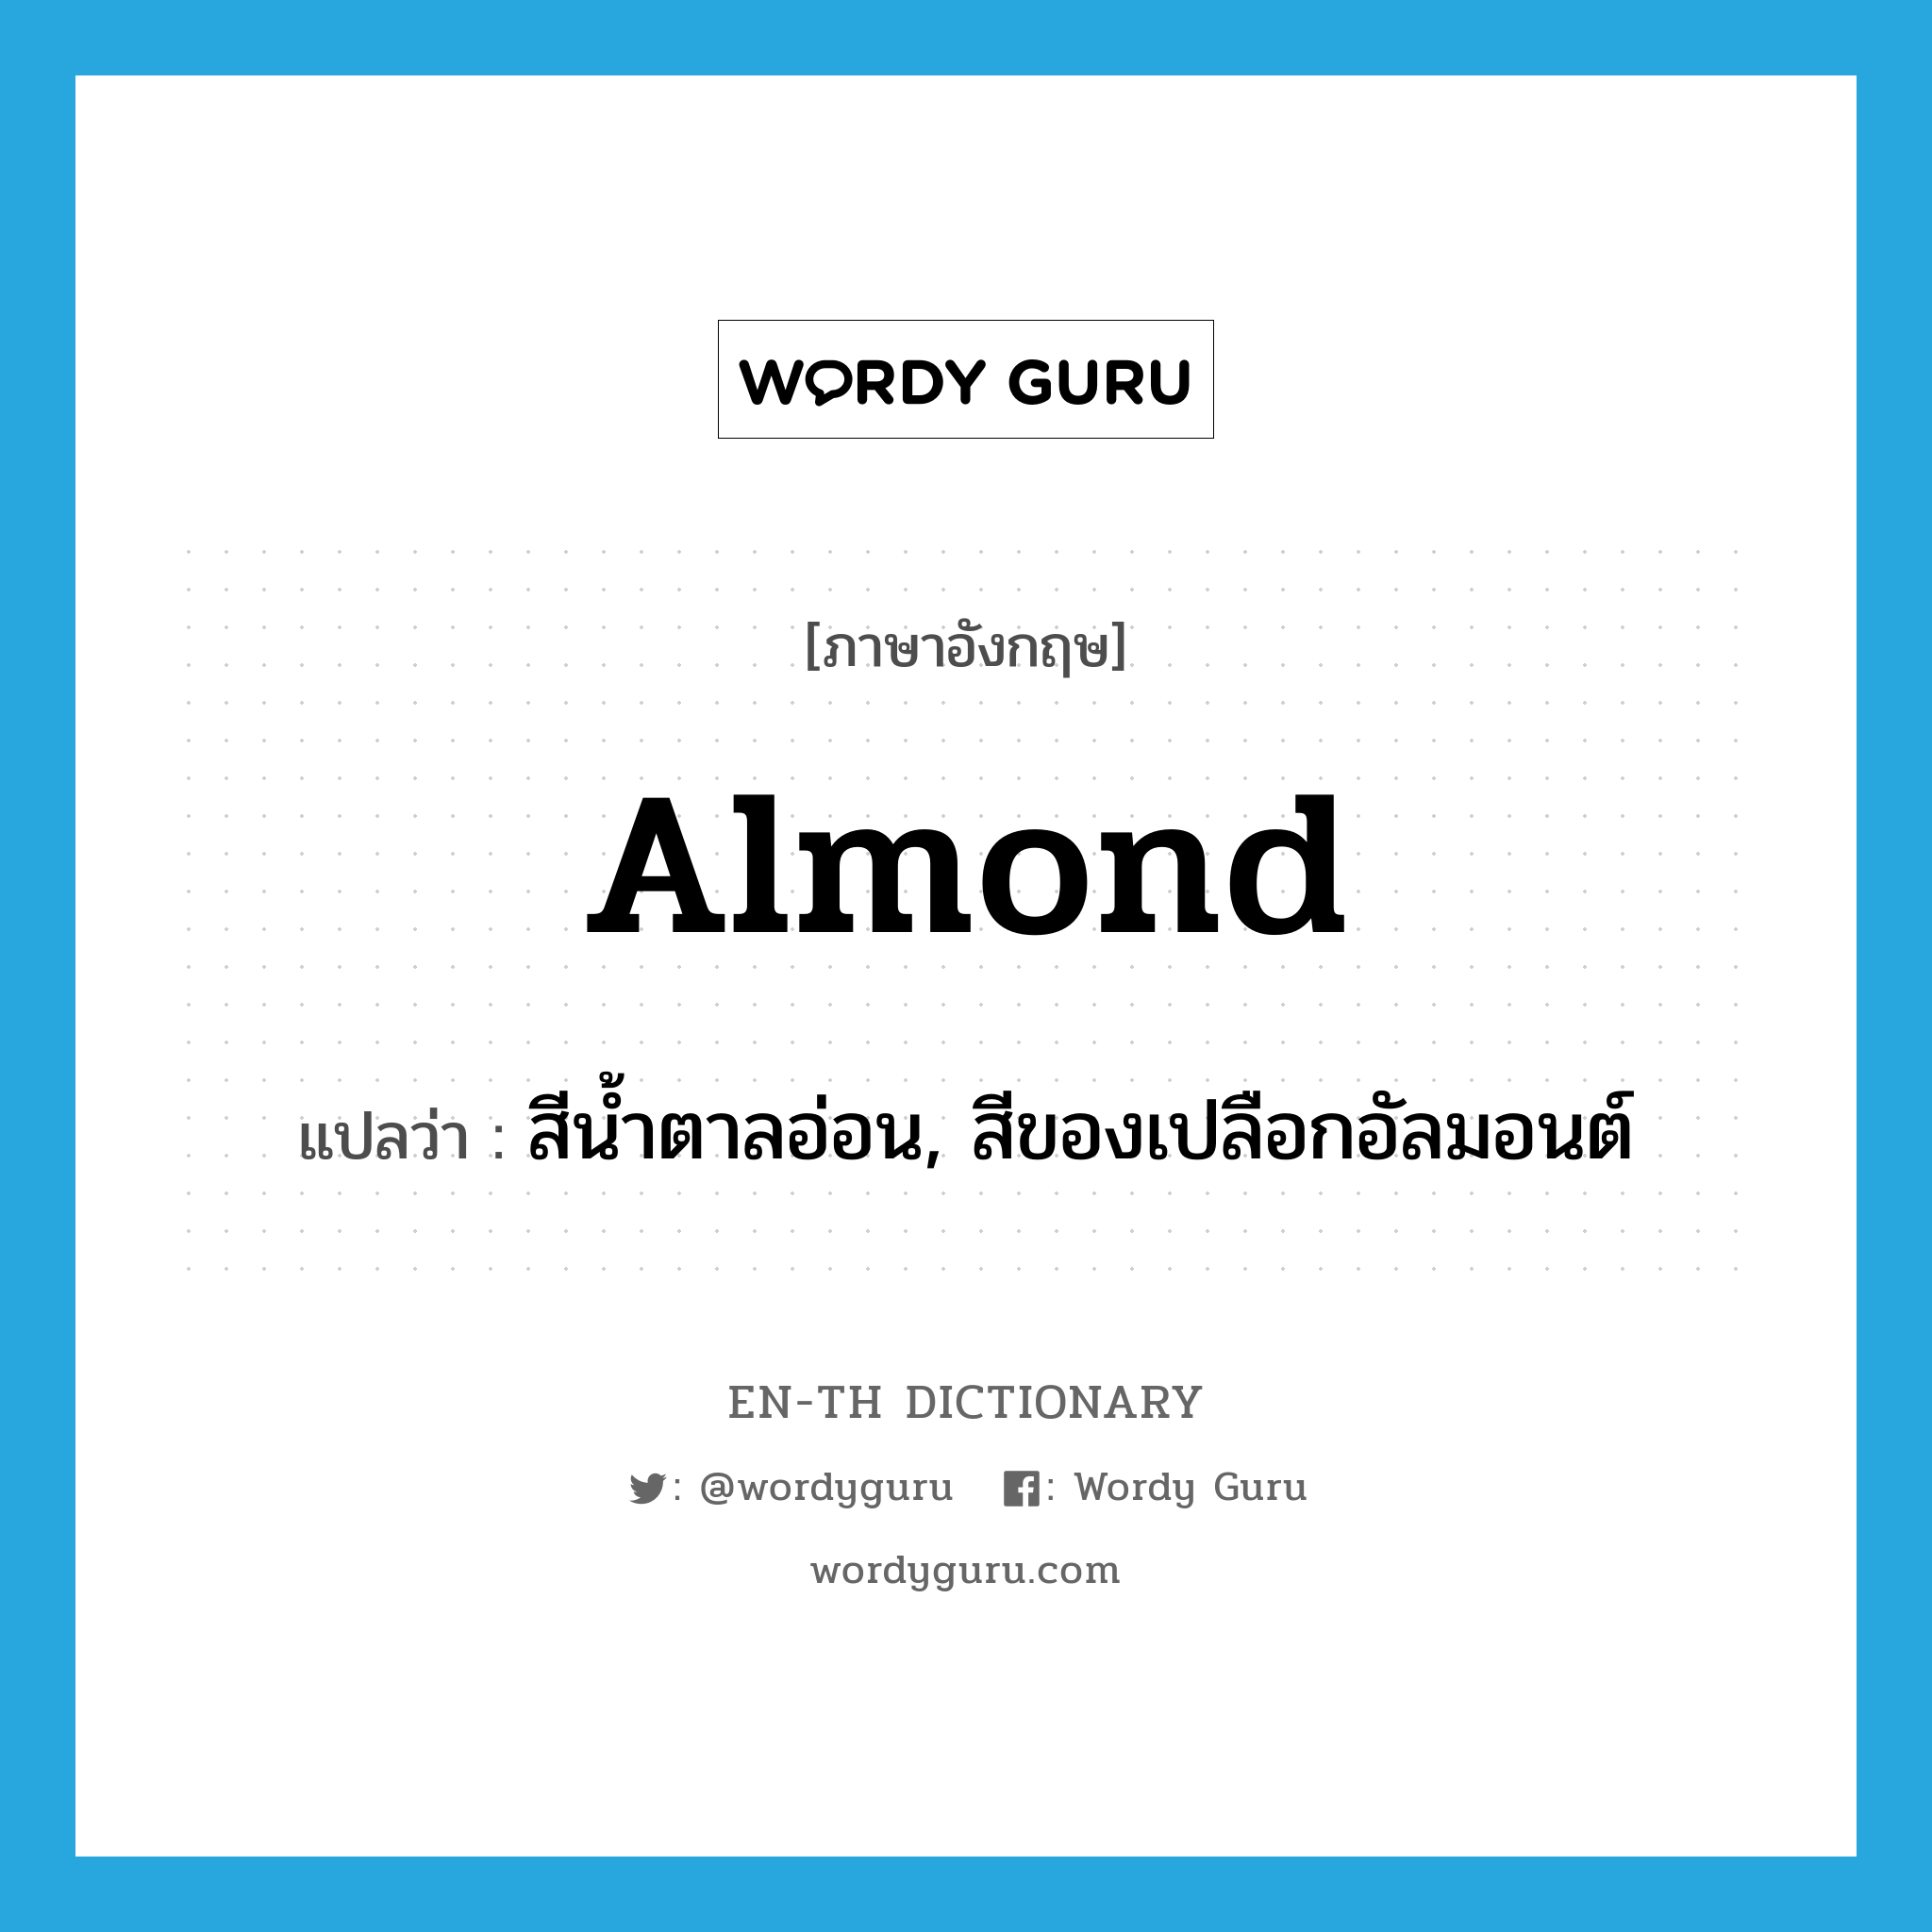 สีน้ำตาลอ่อน, สีของเปลือกอัลมอนต์ ภาษาอังกฤษ?, คำศัพท์ภาษาอังกฤษ สีน้ำตาลอ่อน, สีของเปลือกอัลมอนต์ แปลว่า almond ประเภท N หมวด N